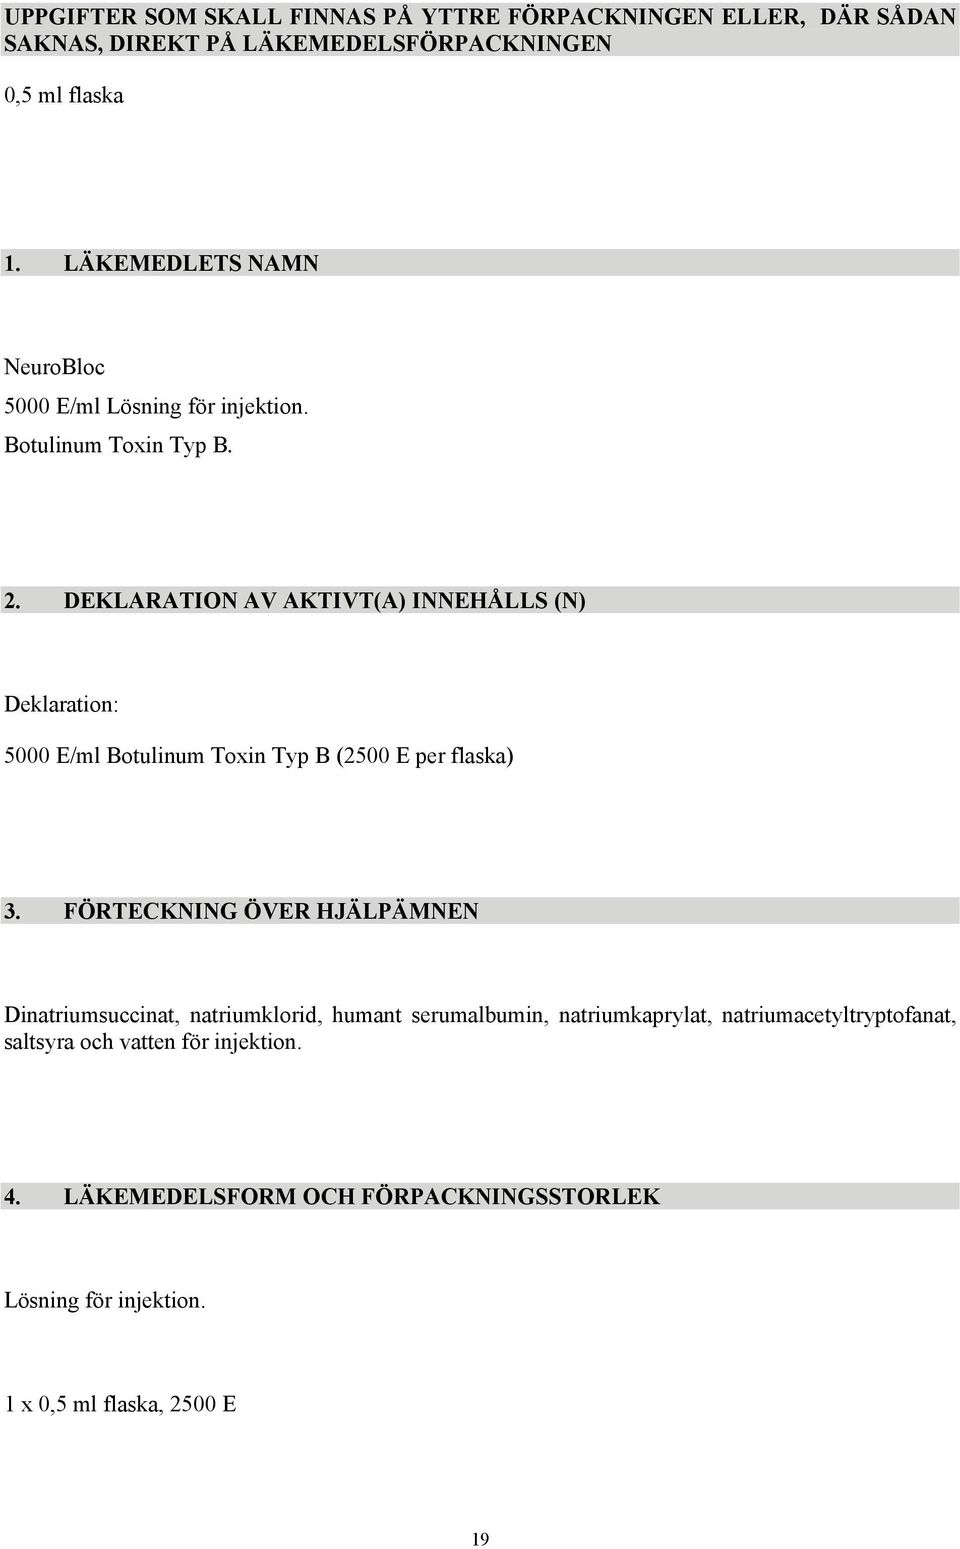 DEKLARATION AV AKTIVT(A) INNEHÅLLS (N) Deklaration: 5000 E/ml Botulinum Toxin Typ B (2500 E per flaska) 3.